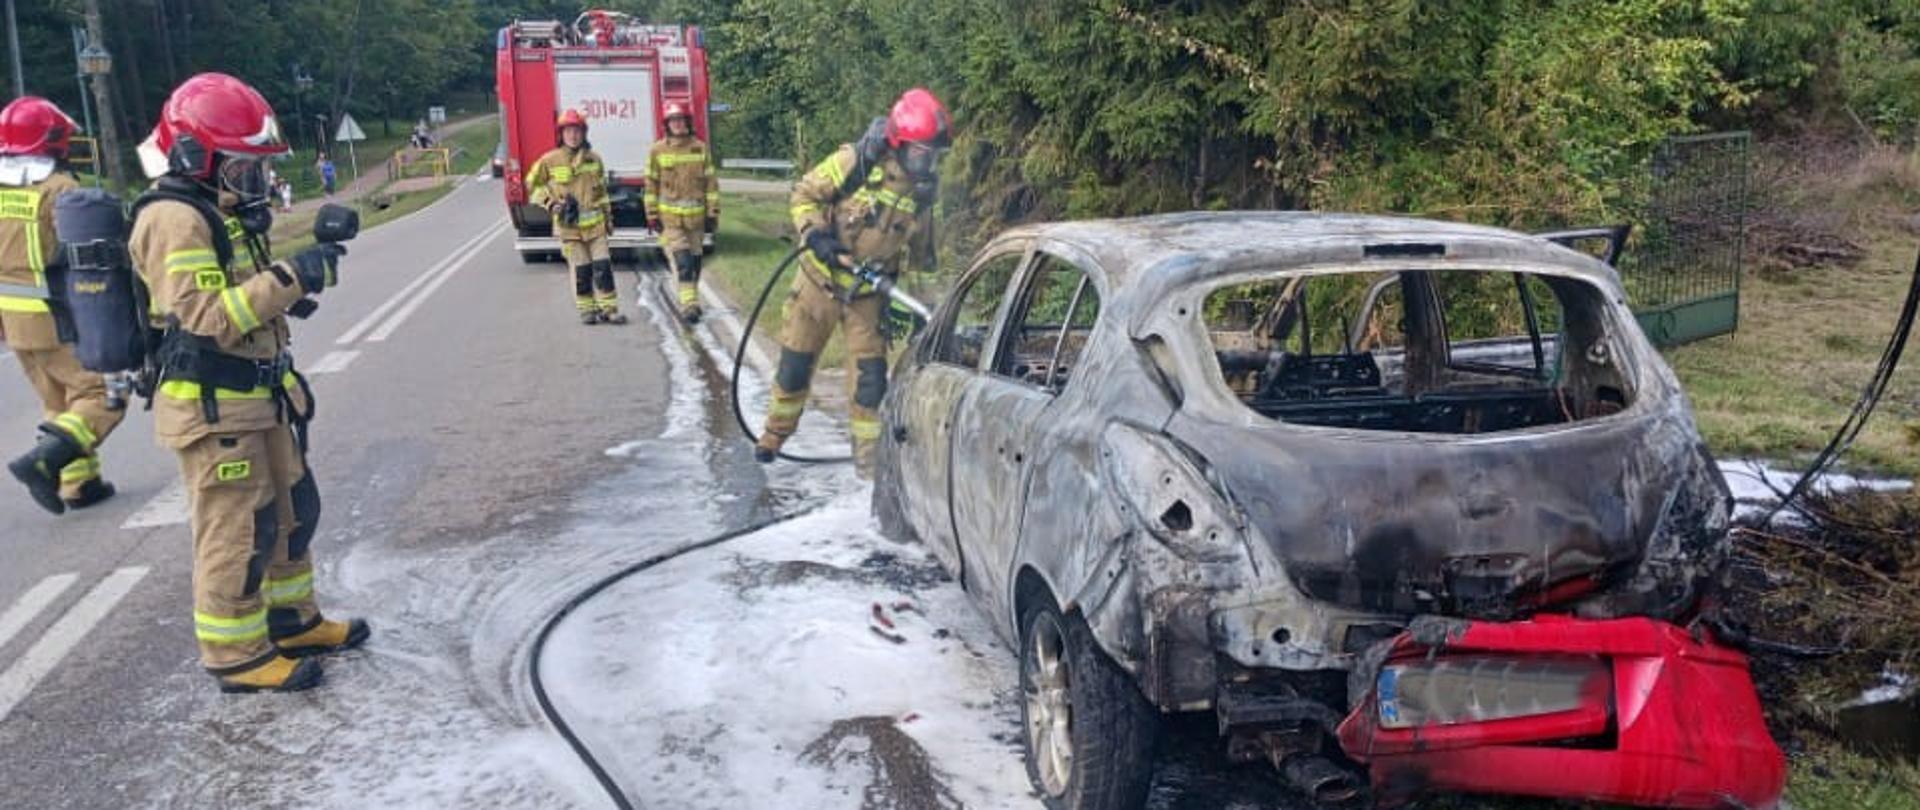 Zdjęcie przedstawia po prawej stronie spalony samochód. Przed nim stoi strażak z wężem sprawdzając auto, z prawej: funkcjonariusz sprawdza kamerą termowizyjną stopień nagrzania pojazdu, w głębi kolejni ratownicy i samochód gaśniczy.